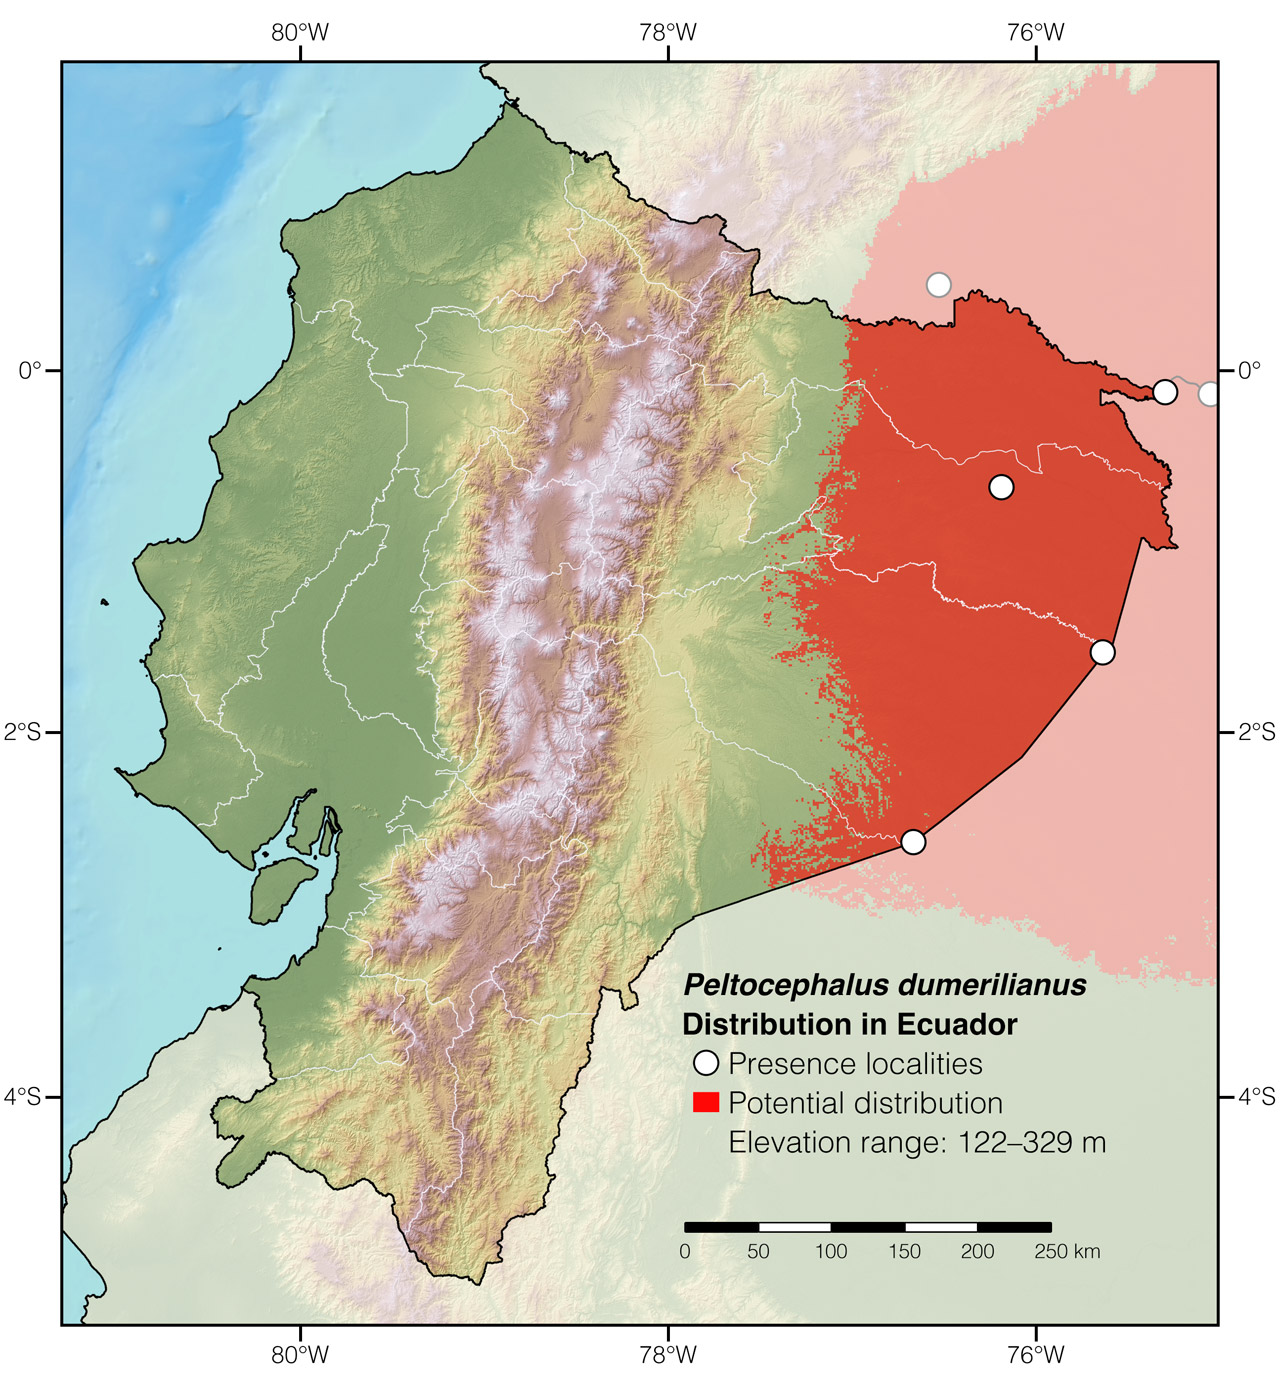 Distribution of Peltocephalus dumerilianus in Ecuador